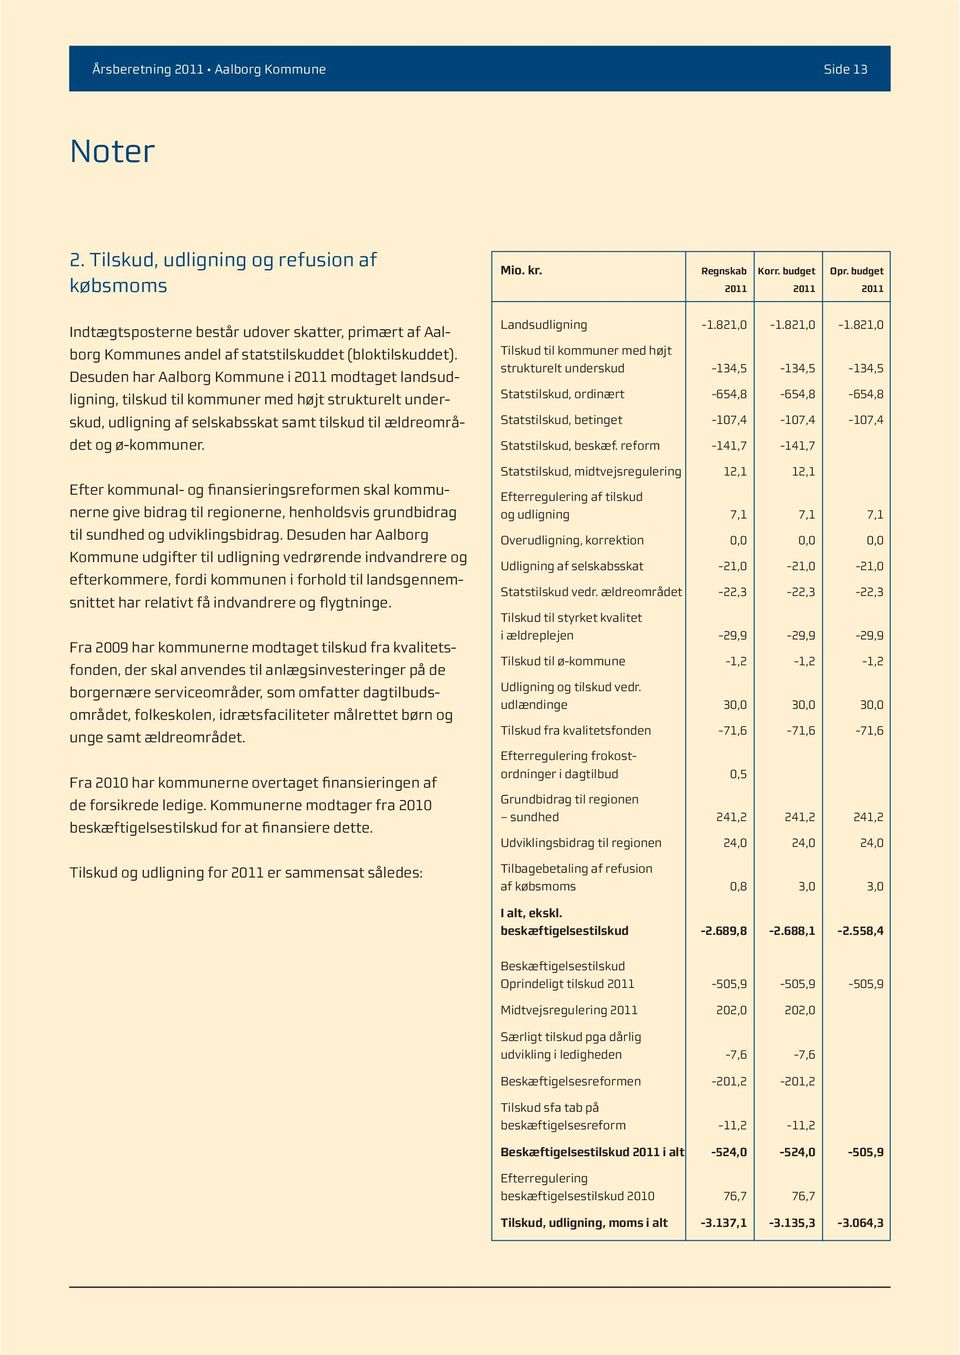 Desuden har Aalborg Kommune i 2011 modtaget landsudligning, tilskud til kommuner med højt strukturelt underskud, udligning af selskabsskat samt tilskud til ældreområdet og ø-kommuner.